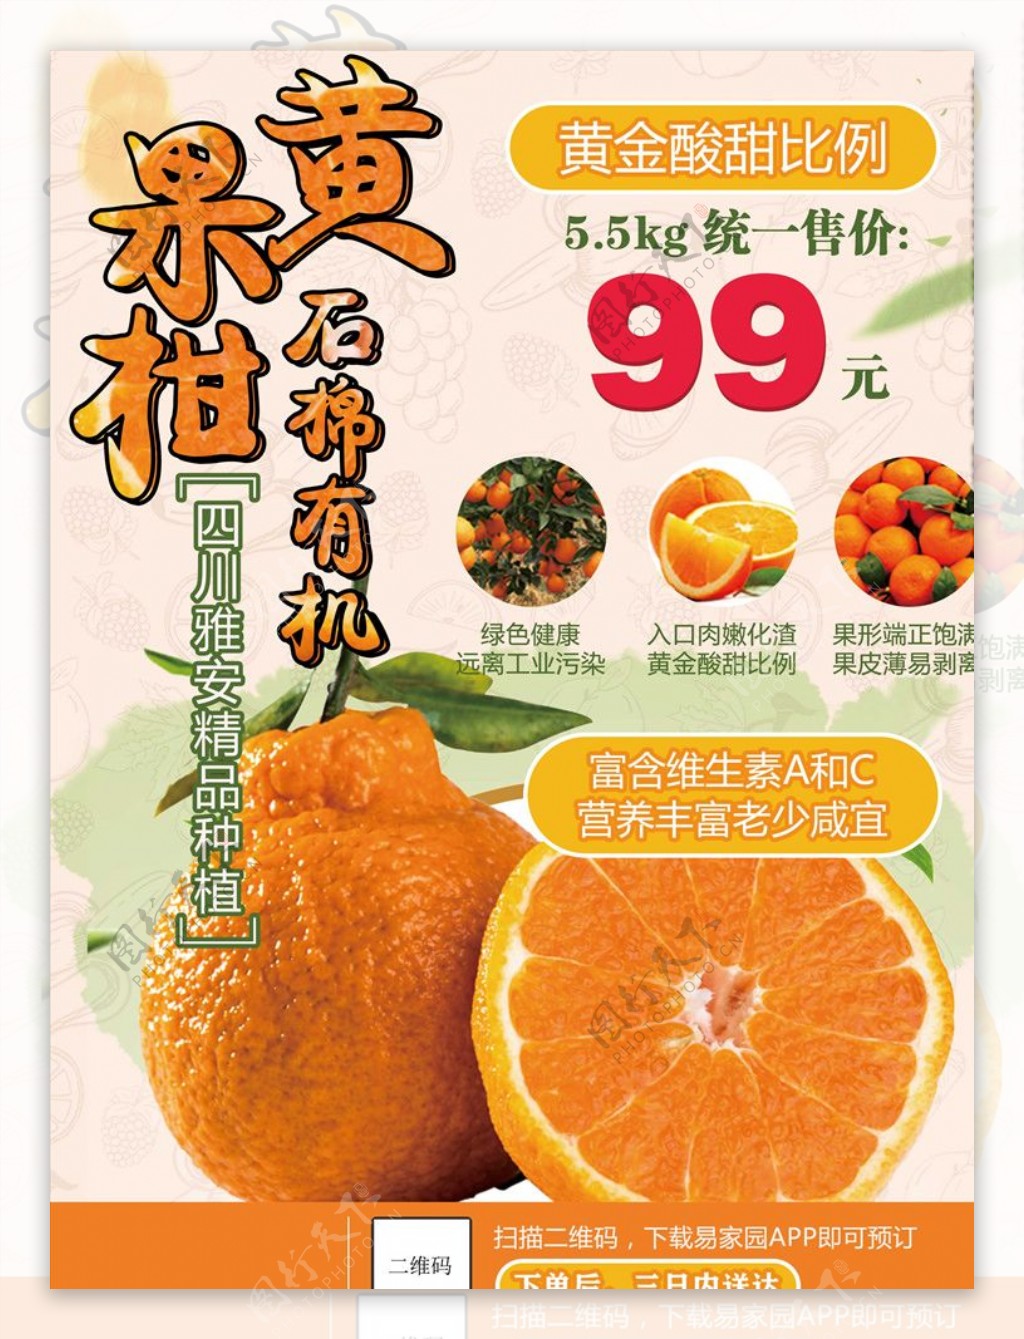 黄果柑饰面有机水果海报设计